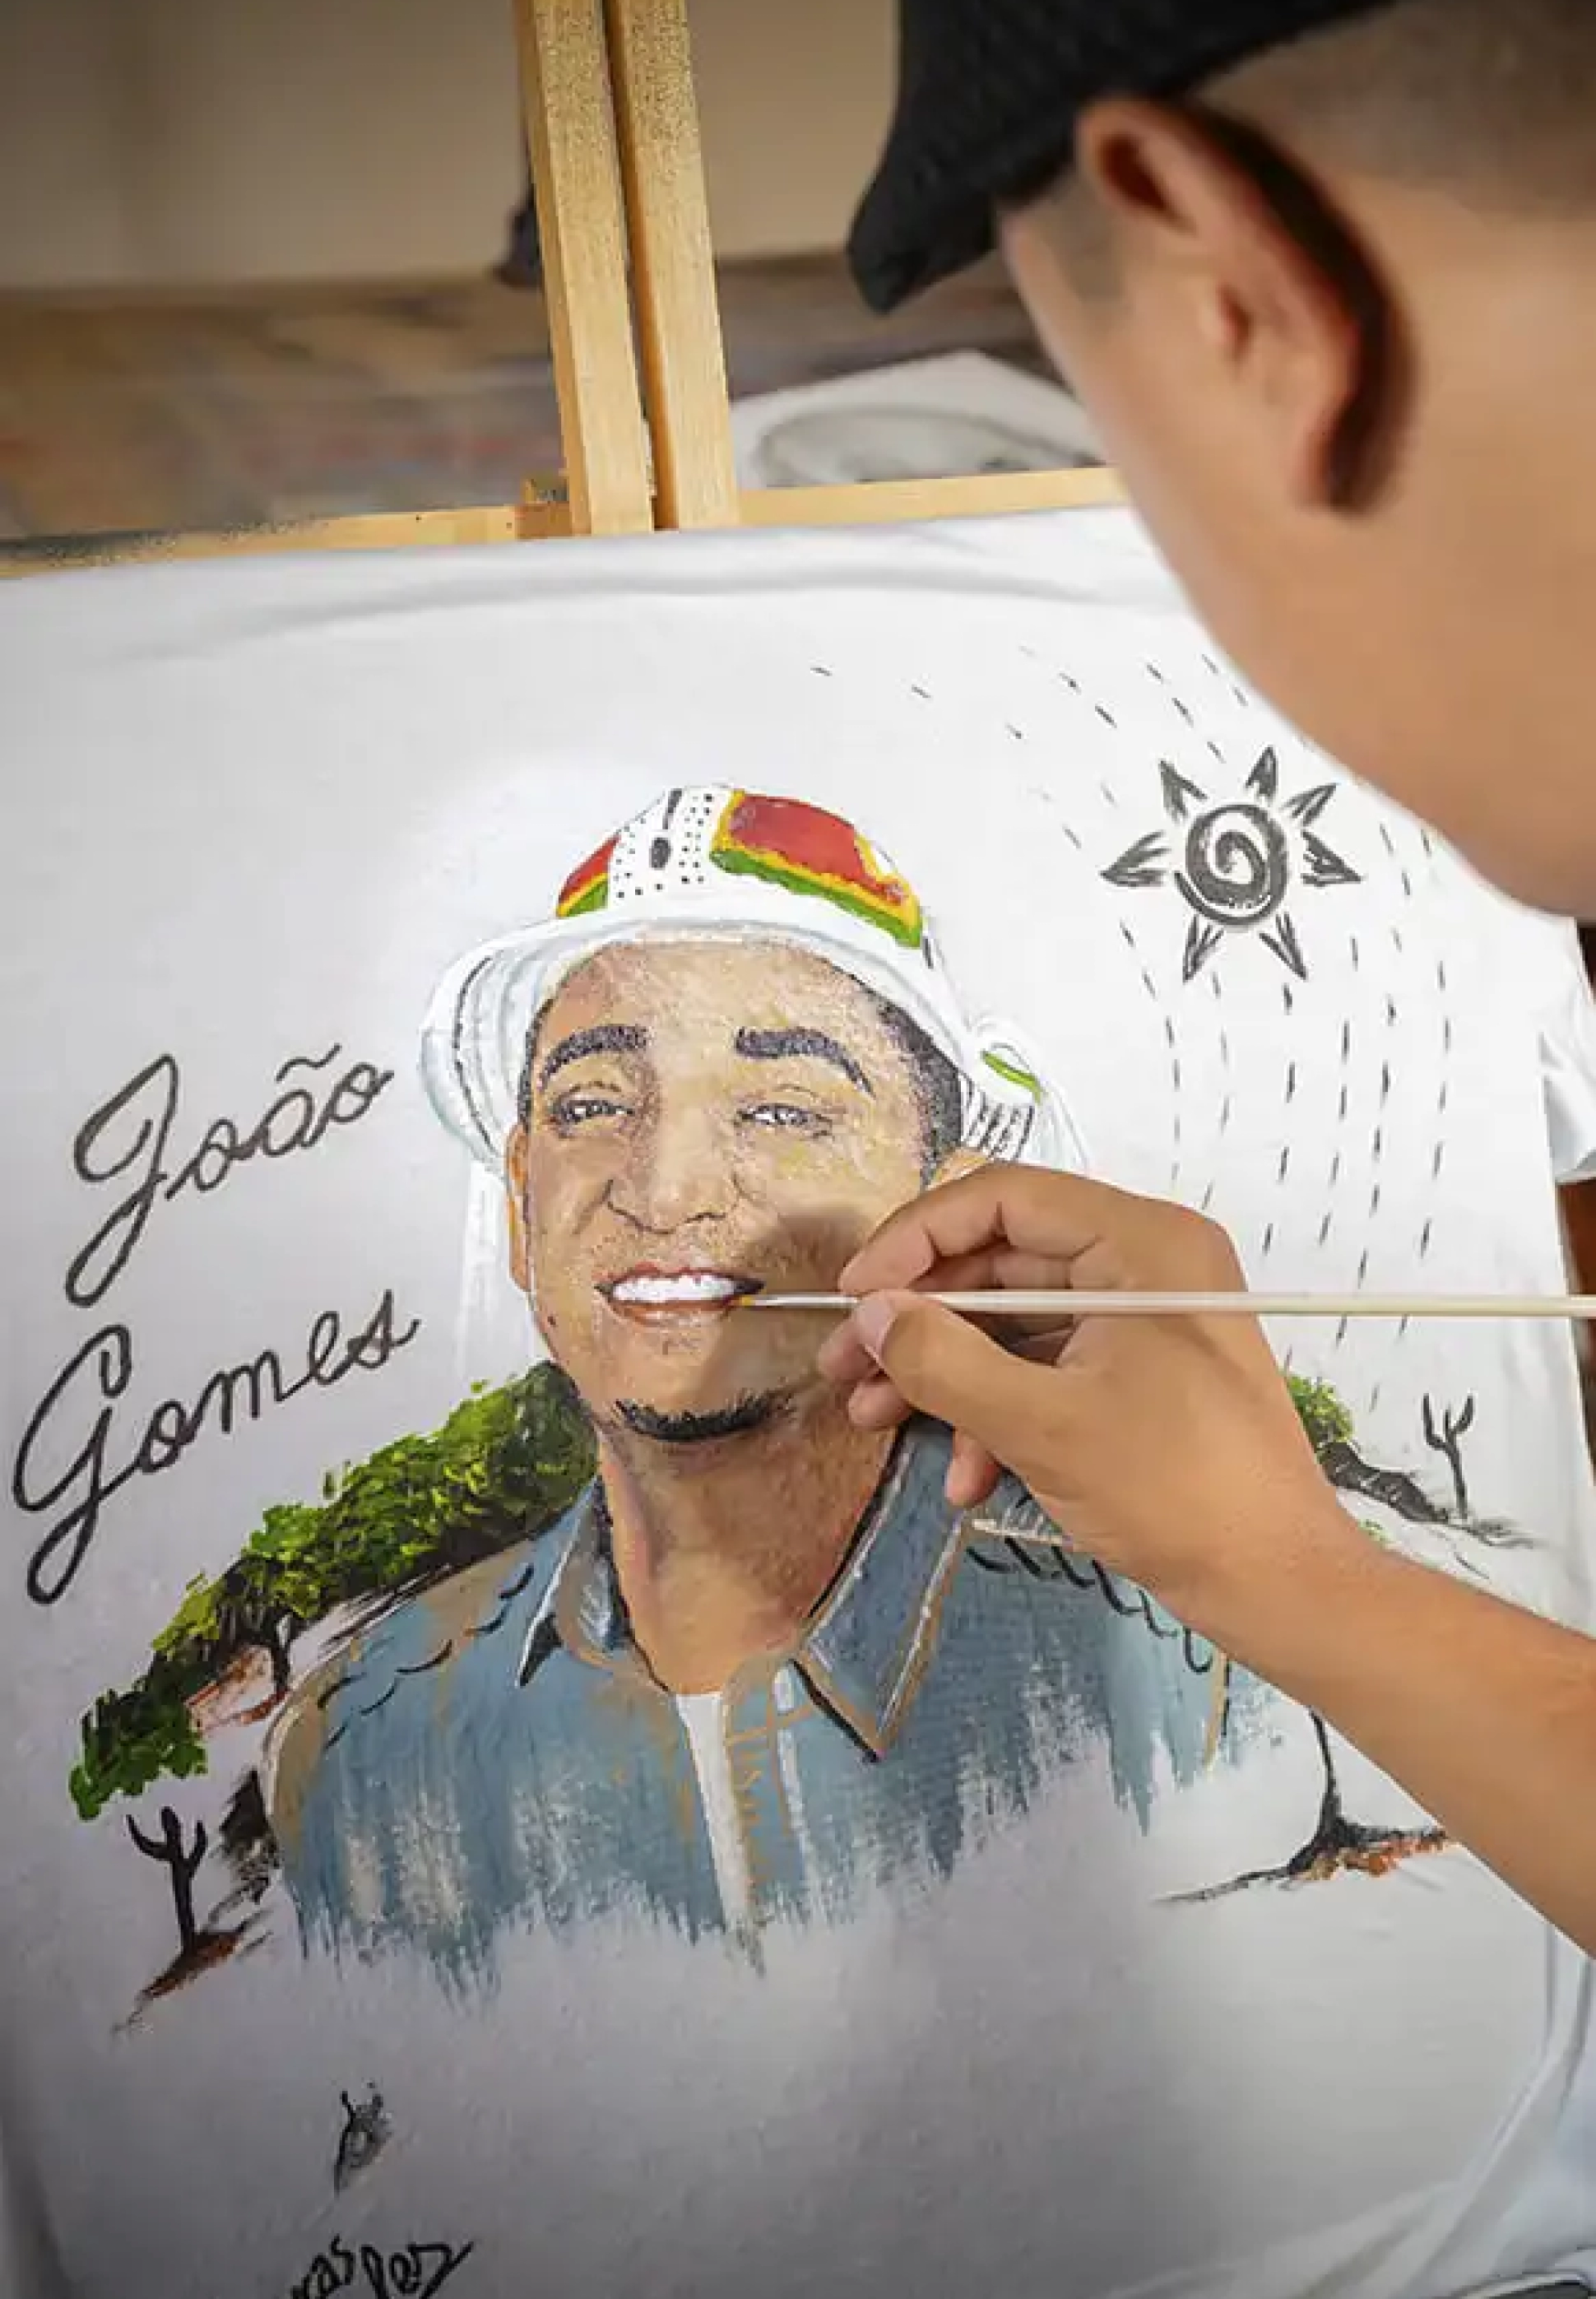 João-Gomes-_1_Lucas Sales Artes e Grafites